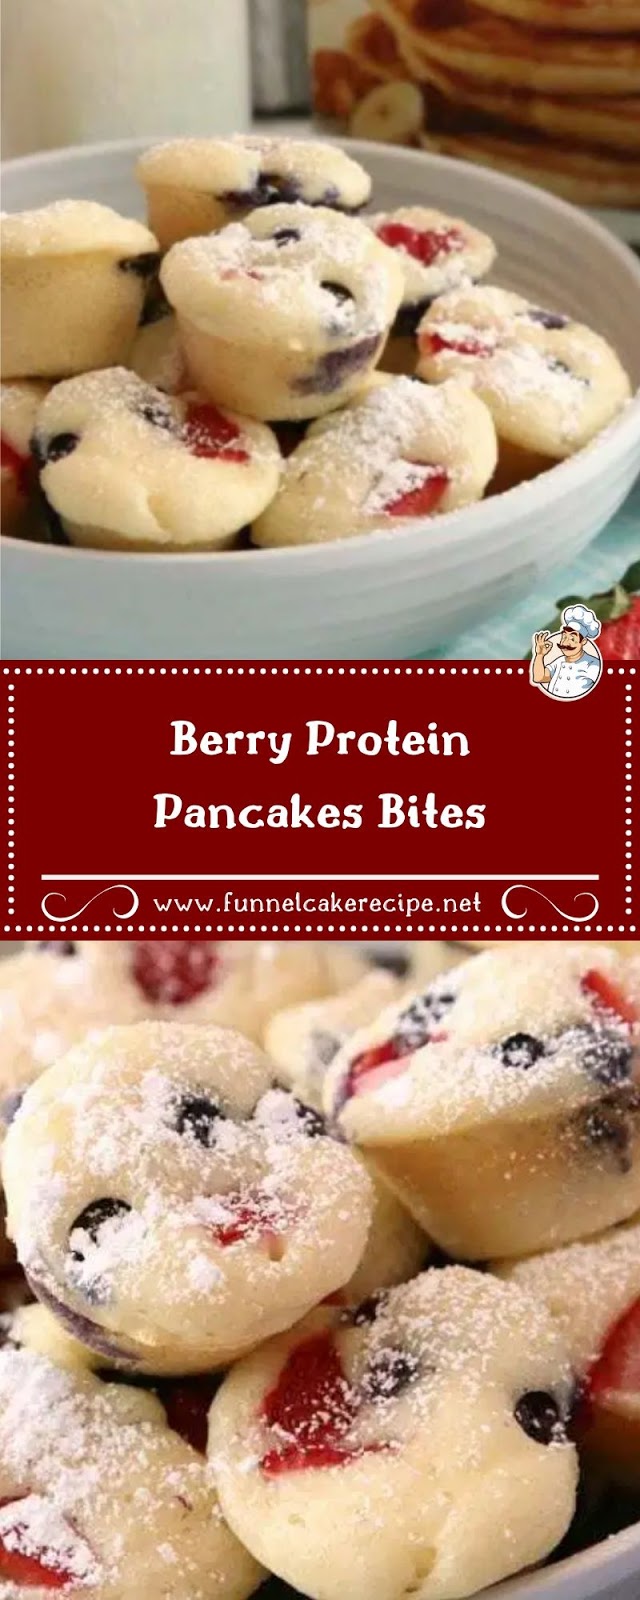 Berry Protein Pancakes Bites